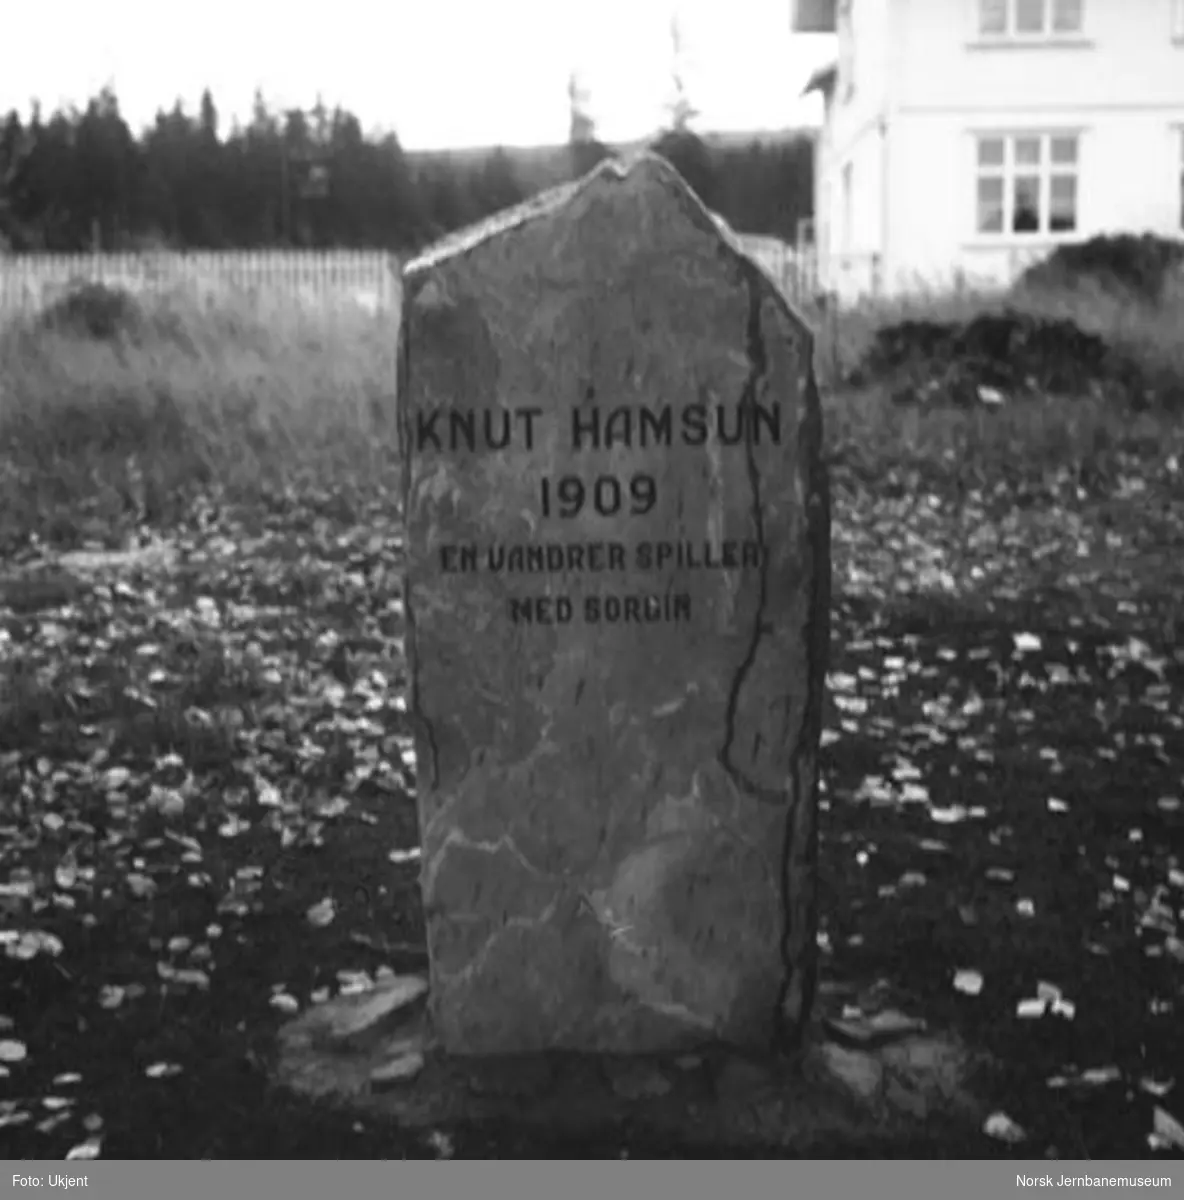 Minnestein Knut Hamsun "En vandrer spiller med sordin"